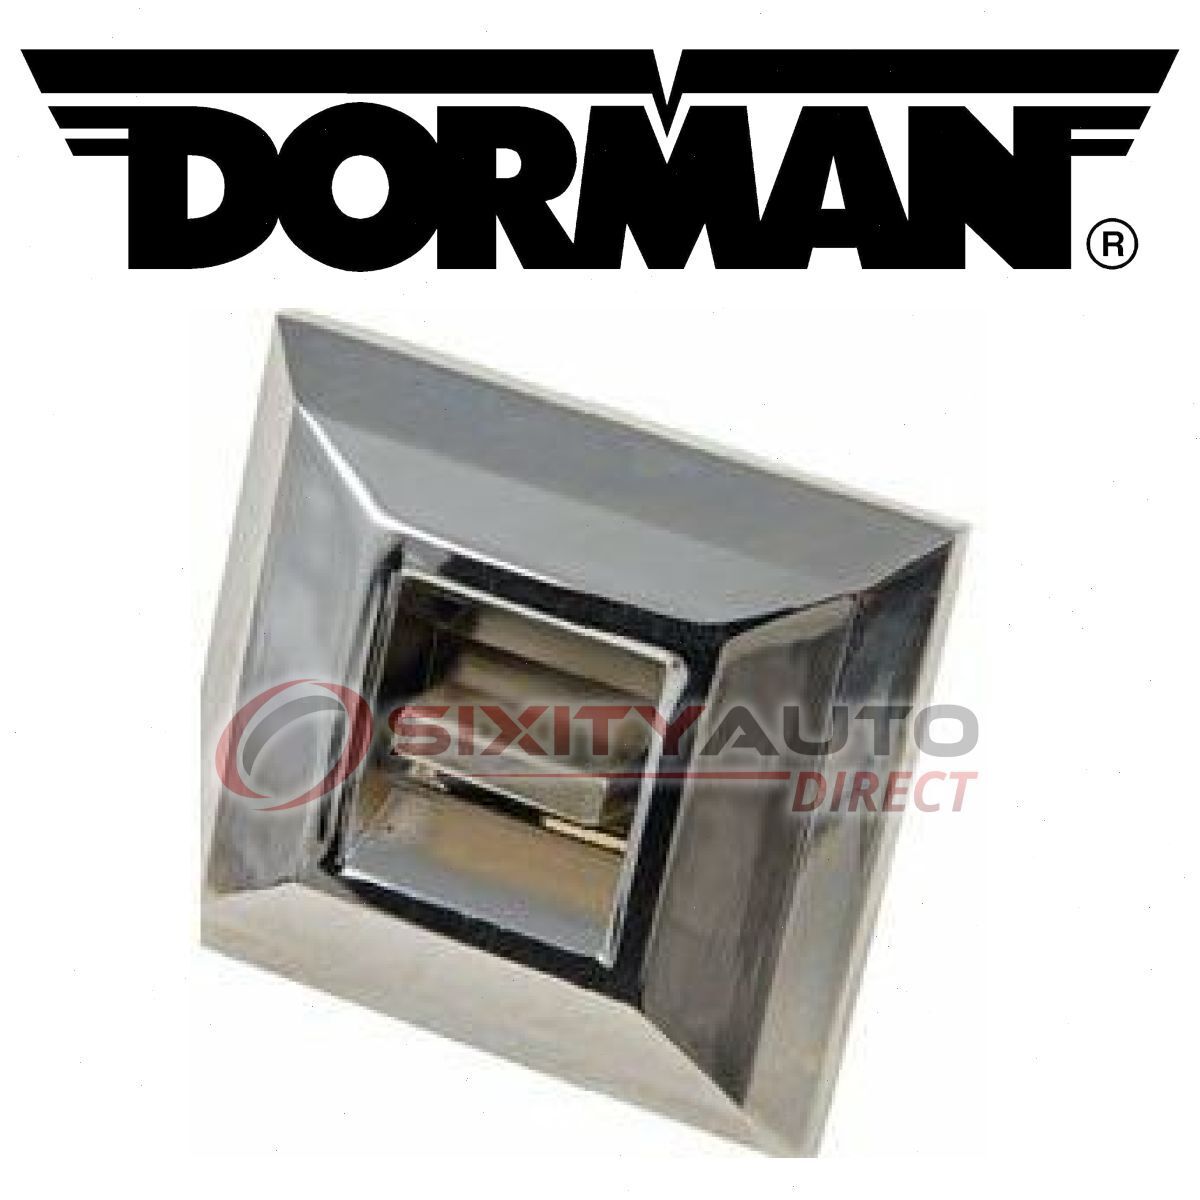 Dorman Rear Left Door Window Switch for 1976-1978 Oldsmobile Cutlass rq